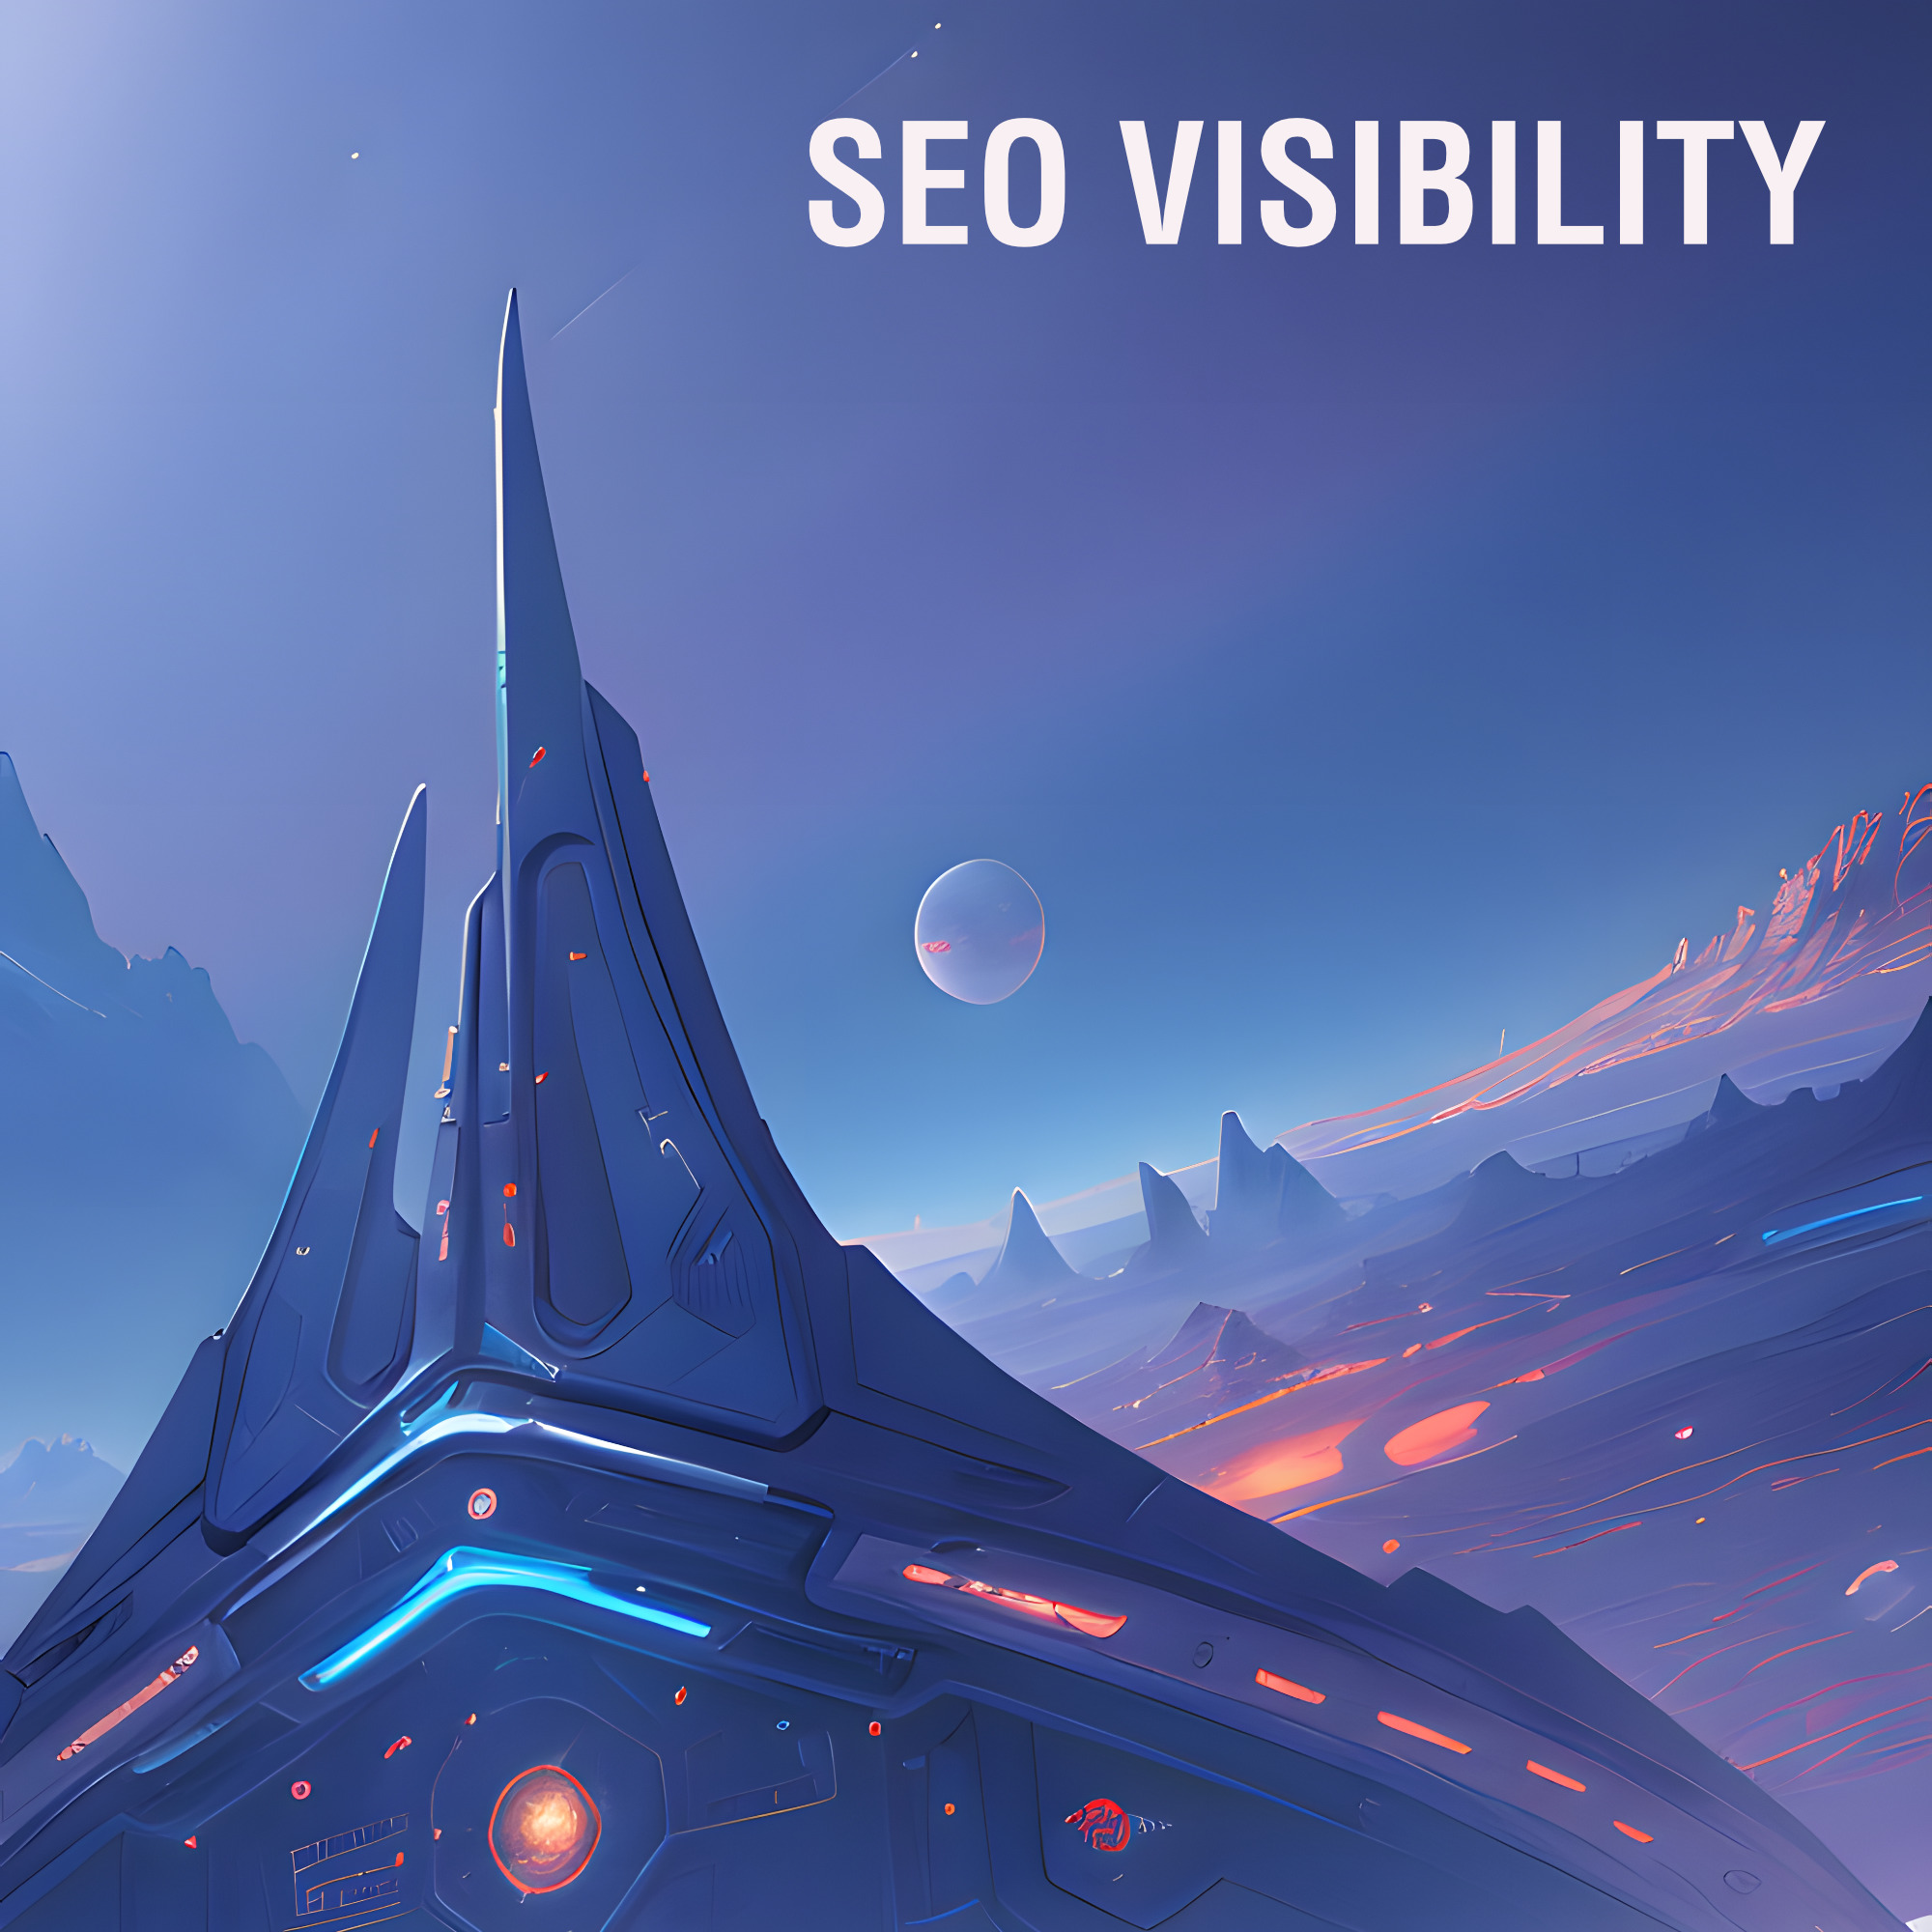 SEO Visibility - Mehr Sichtbarkeit durch SEO